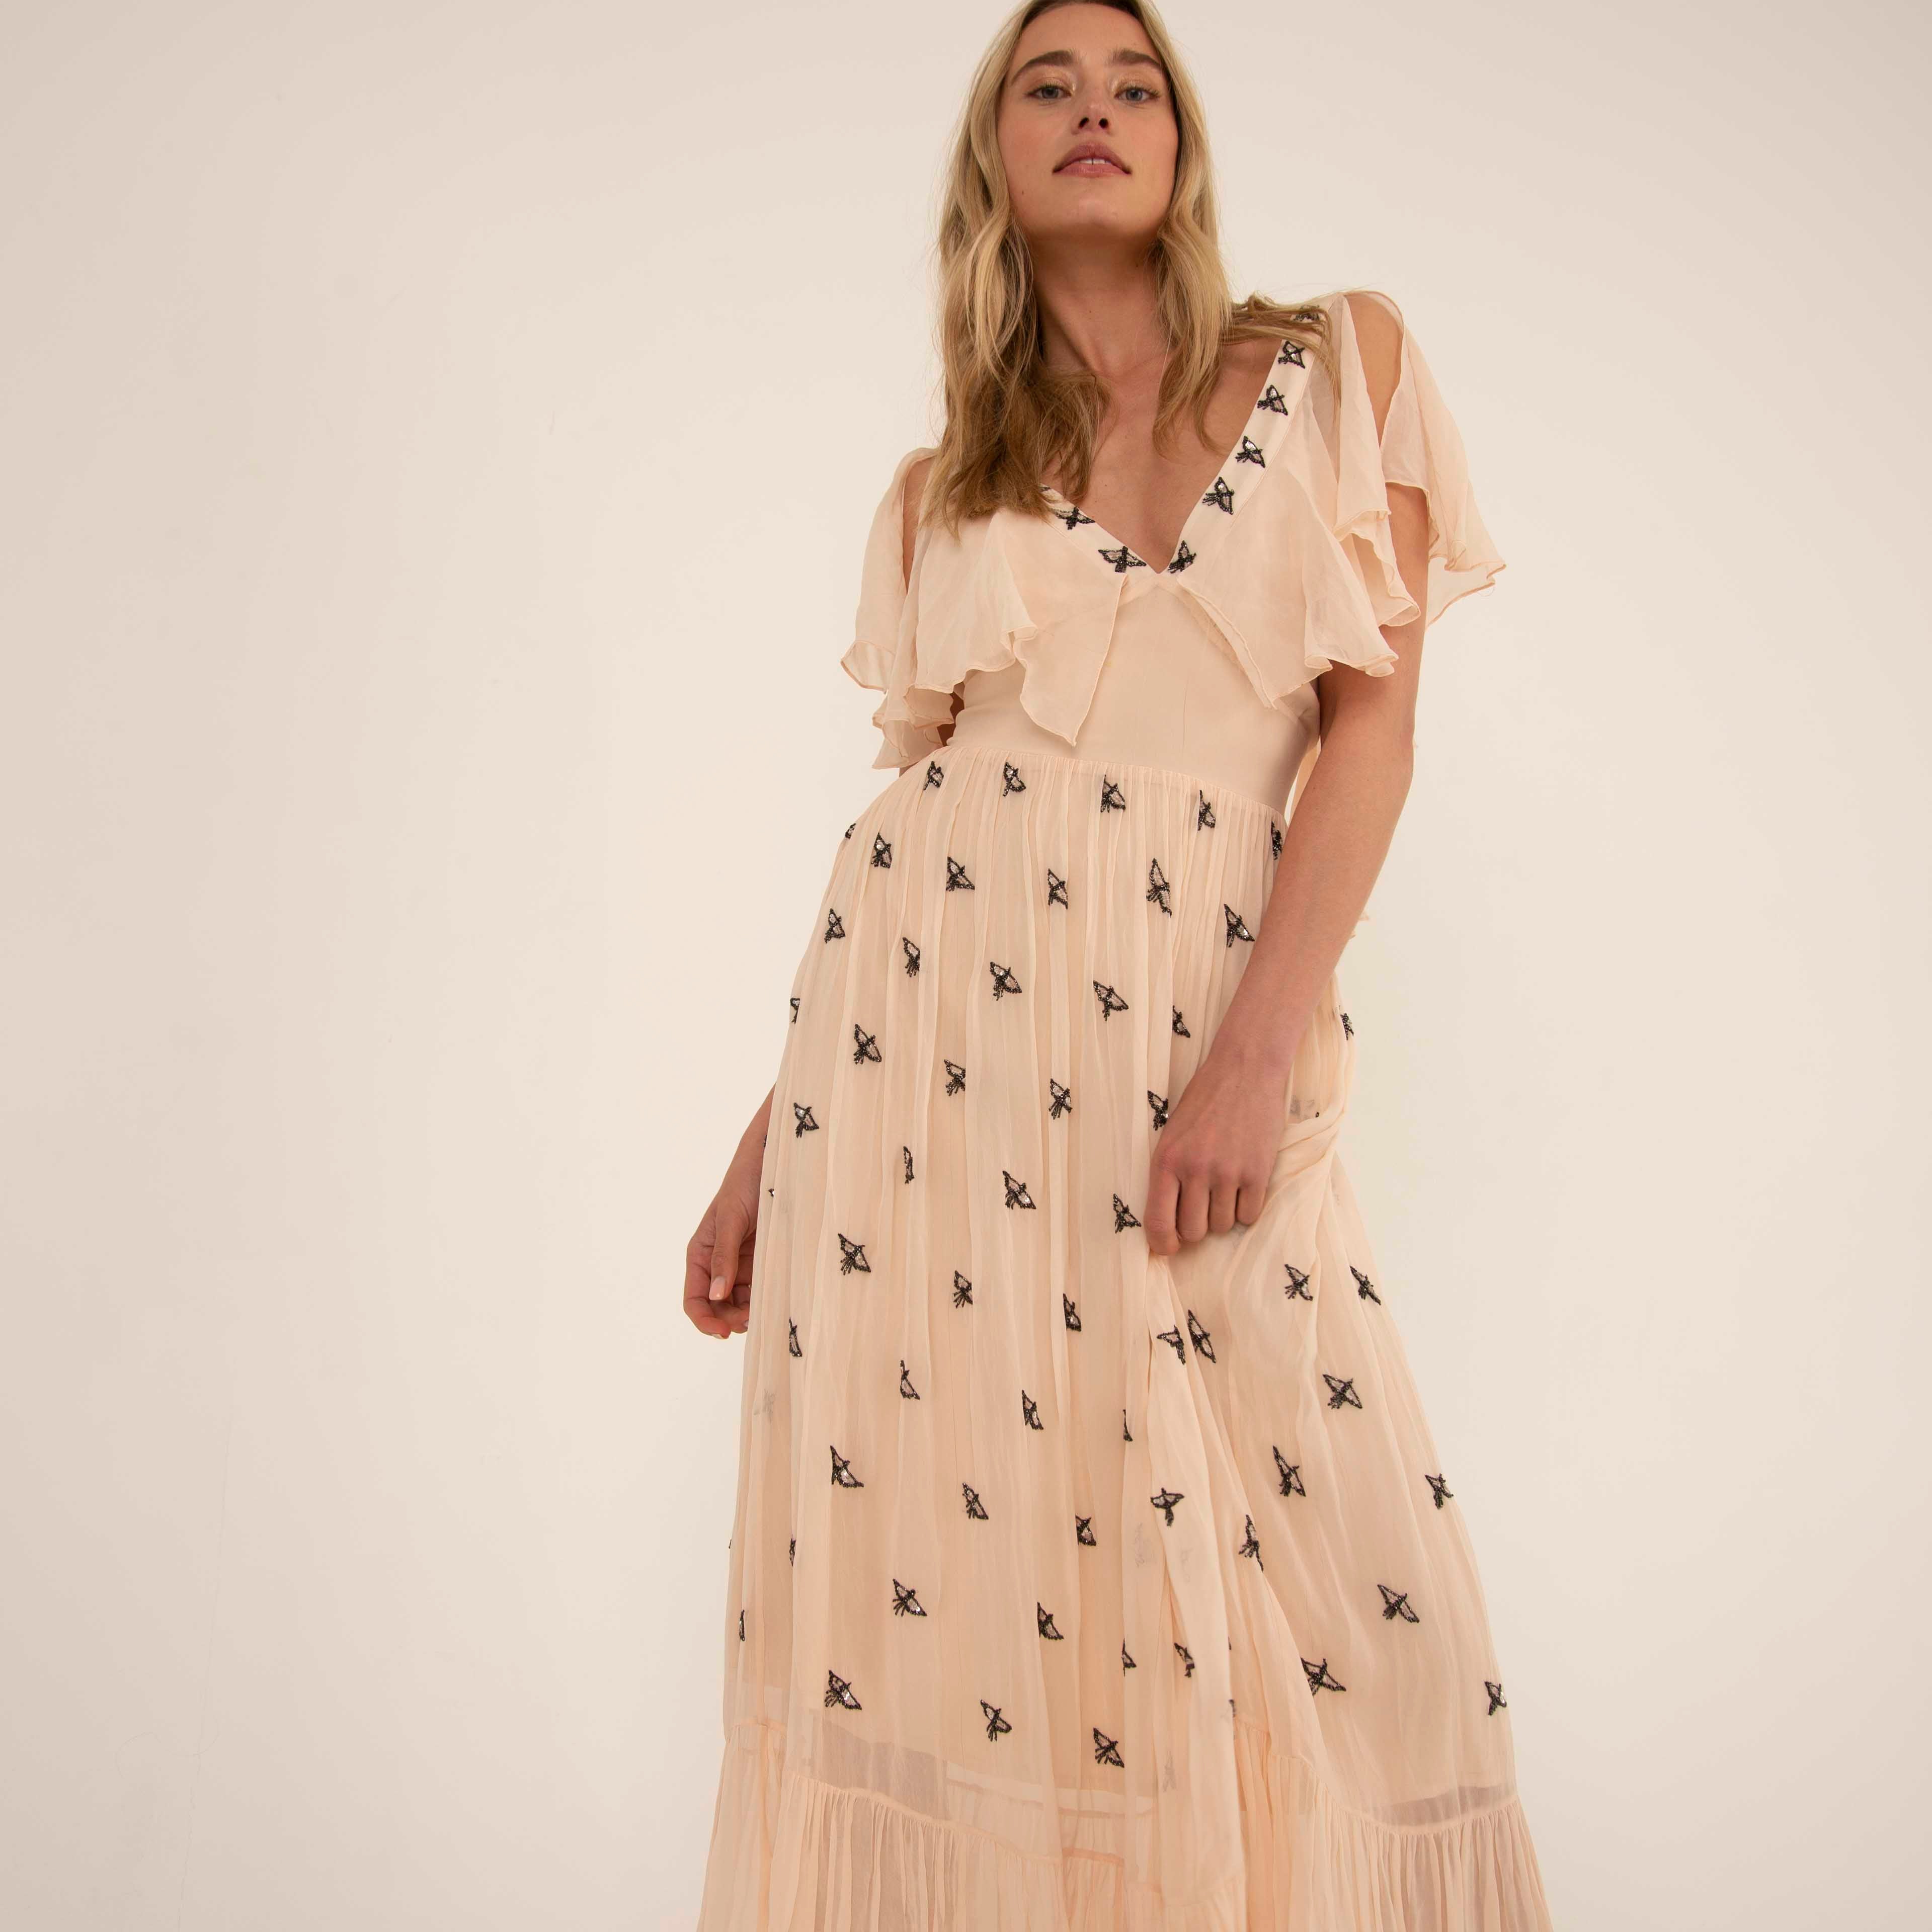 Something Borrowed, kledingverhuur nederland, Alice Temperley jurk. Bruiloftgast jurk